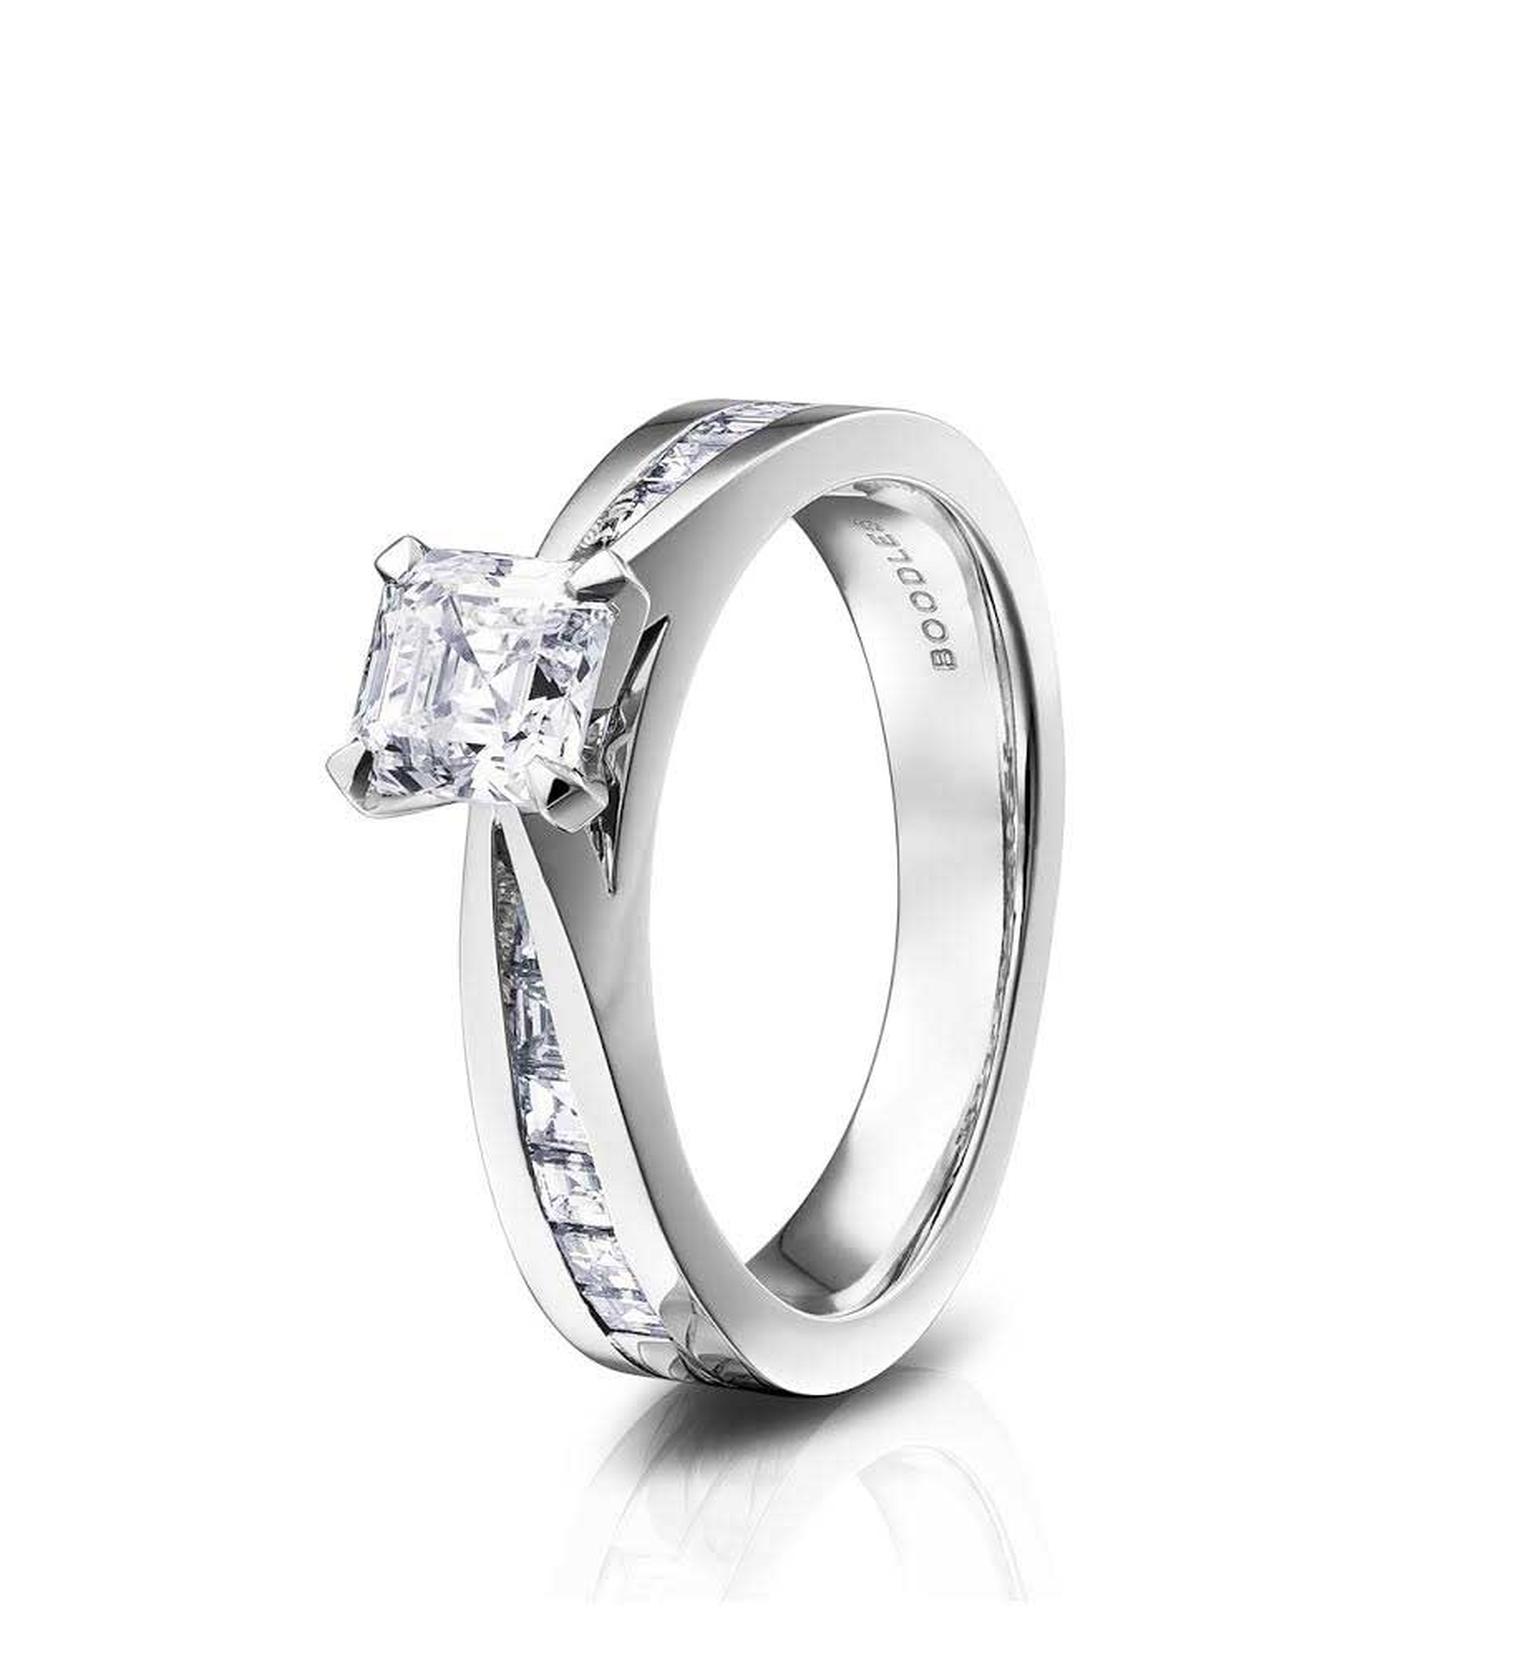 Boodles Eternal Asscher cut diamond engagement ring in platinum (£11,000).